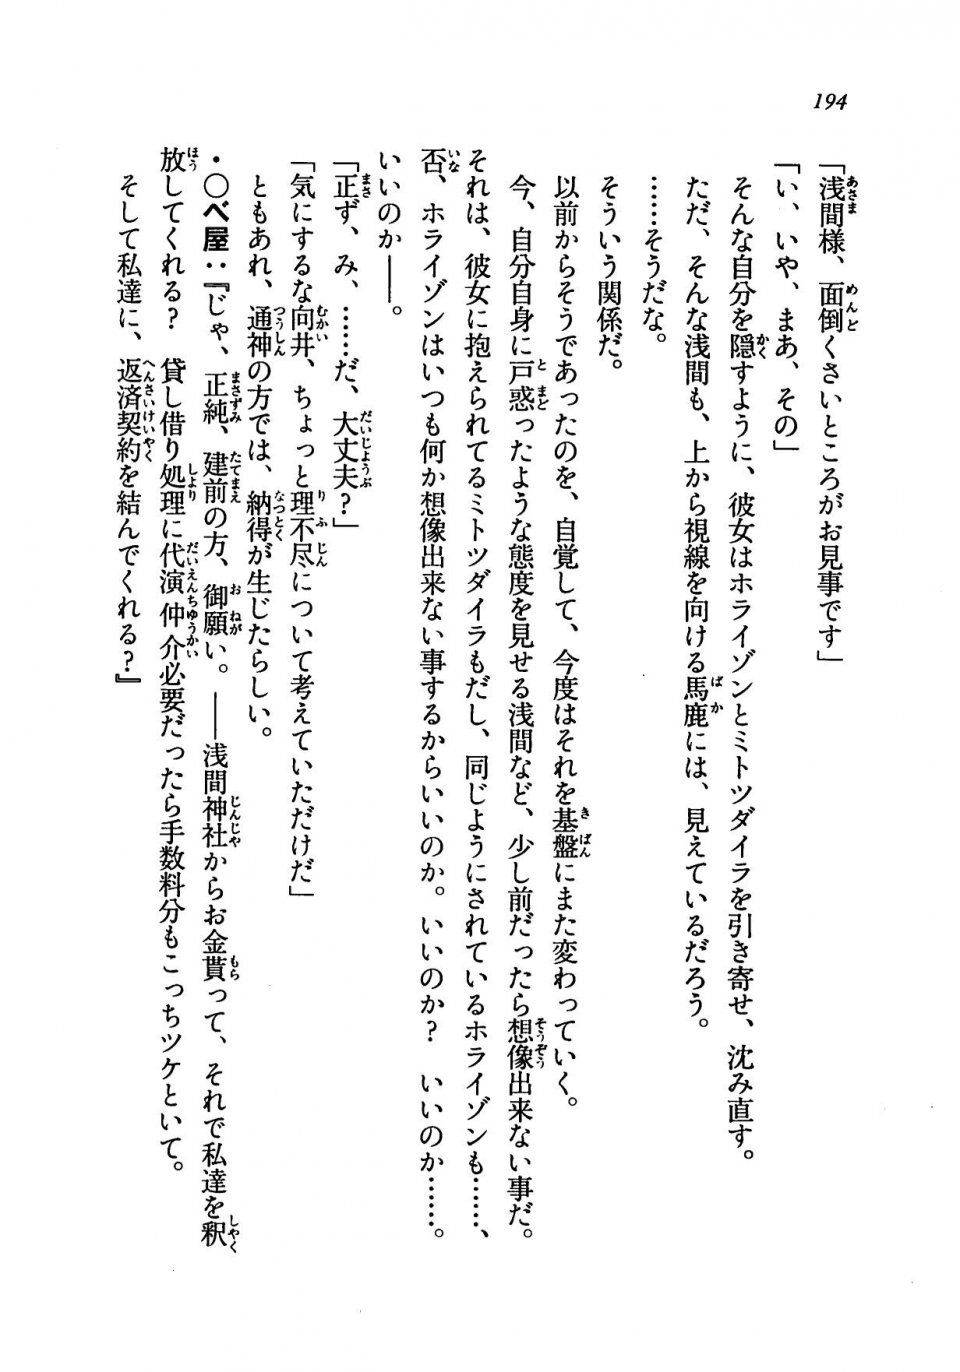 Kyoukai Senjou no Horizon LN Vol 19(8A) - Photo #194